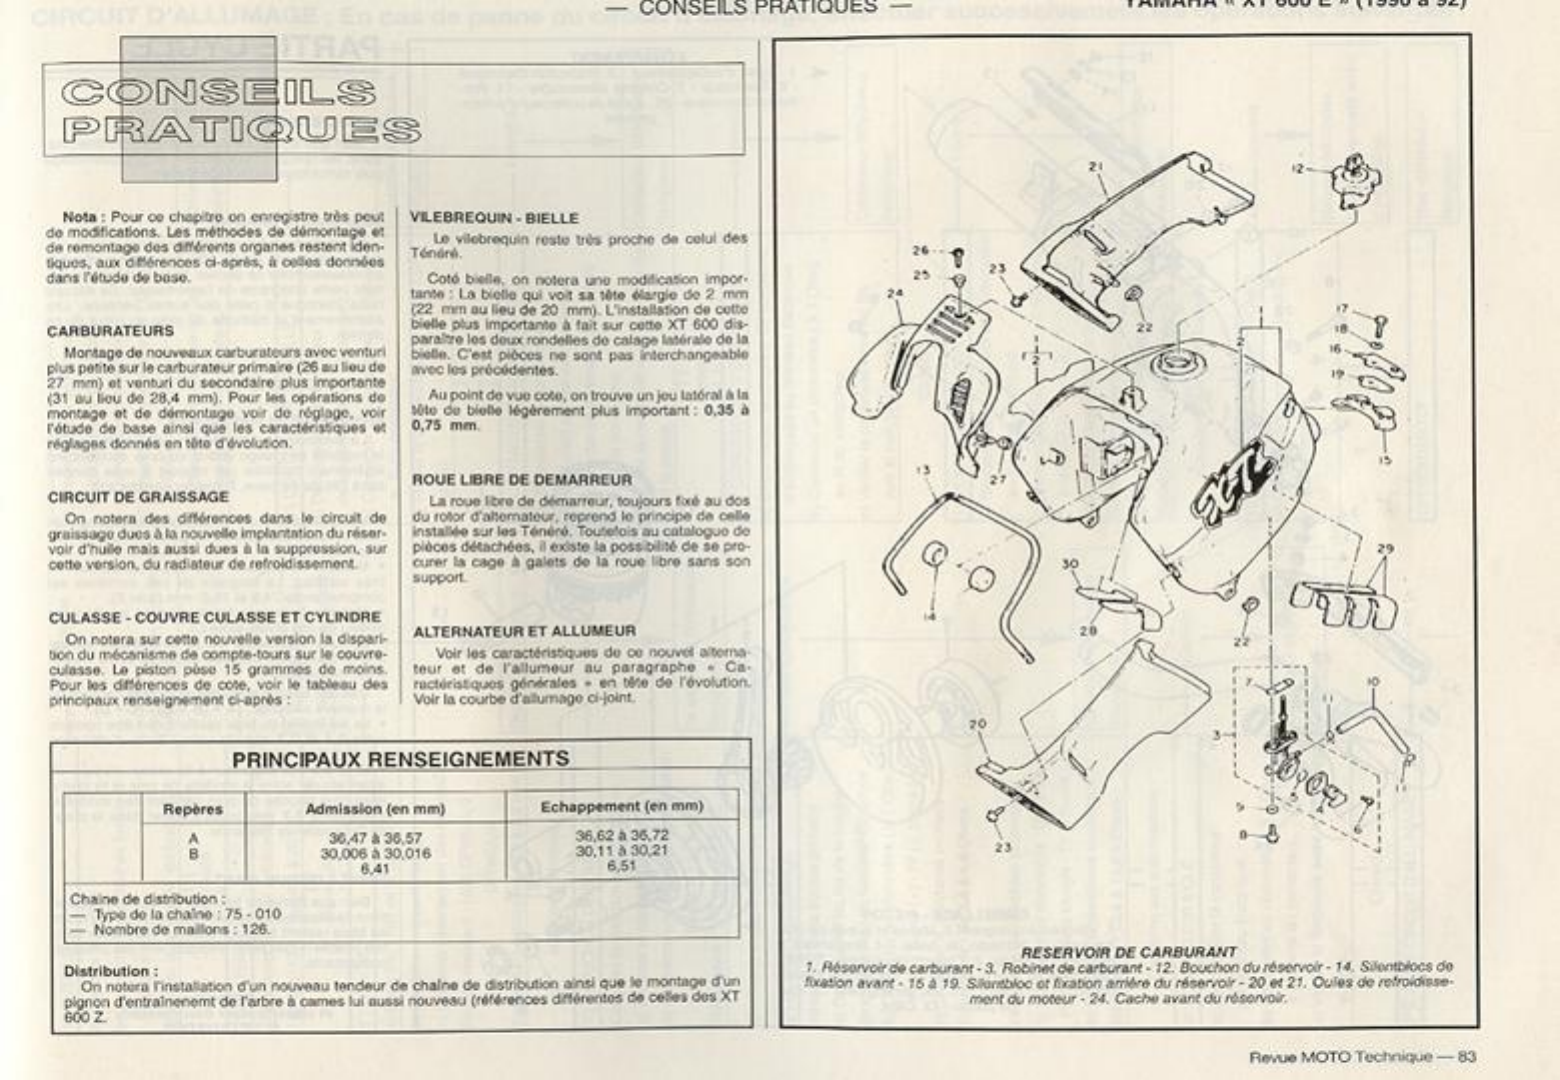 Yamaha Xt 600 Z Tenere 3aj 19 1990 Manual De Reparatie Www Manualedereparatie Info Yamaha Xt 600 Z Tenere 3aj 19 1990 Manual De Reparatie Www Manualedereparatie Info